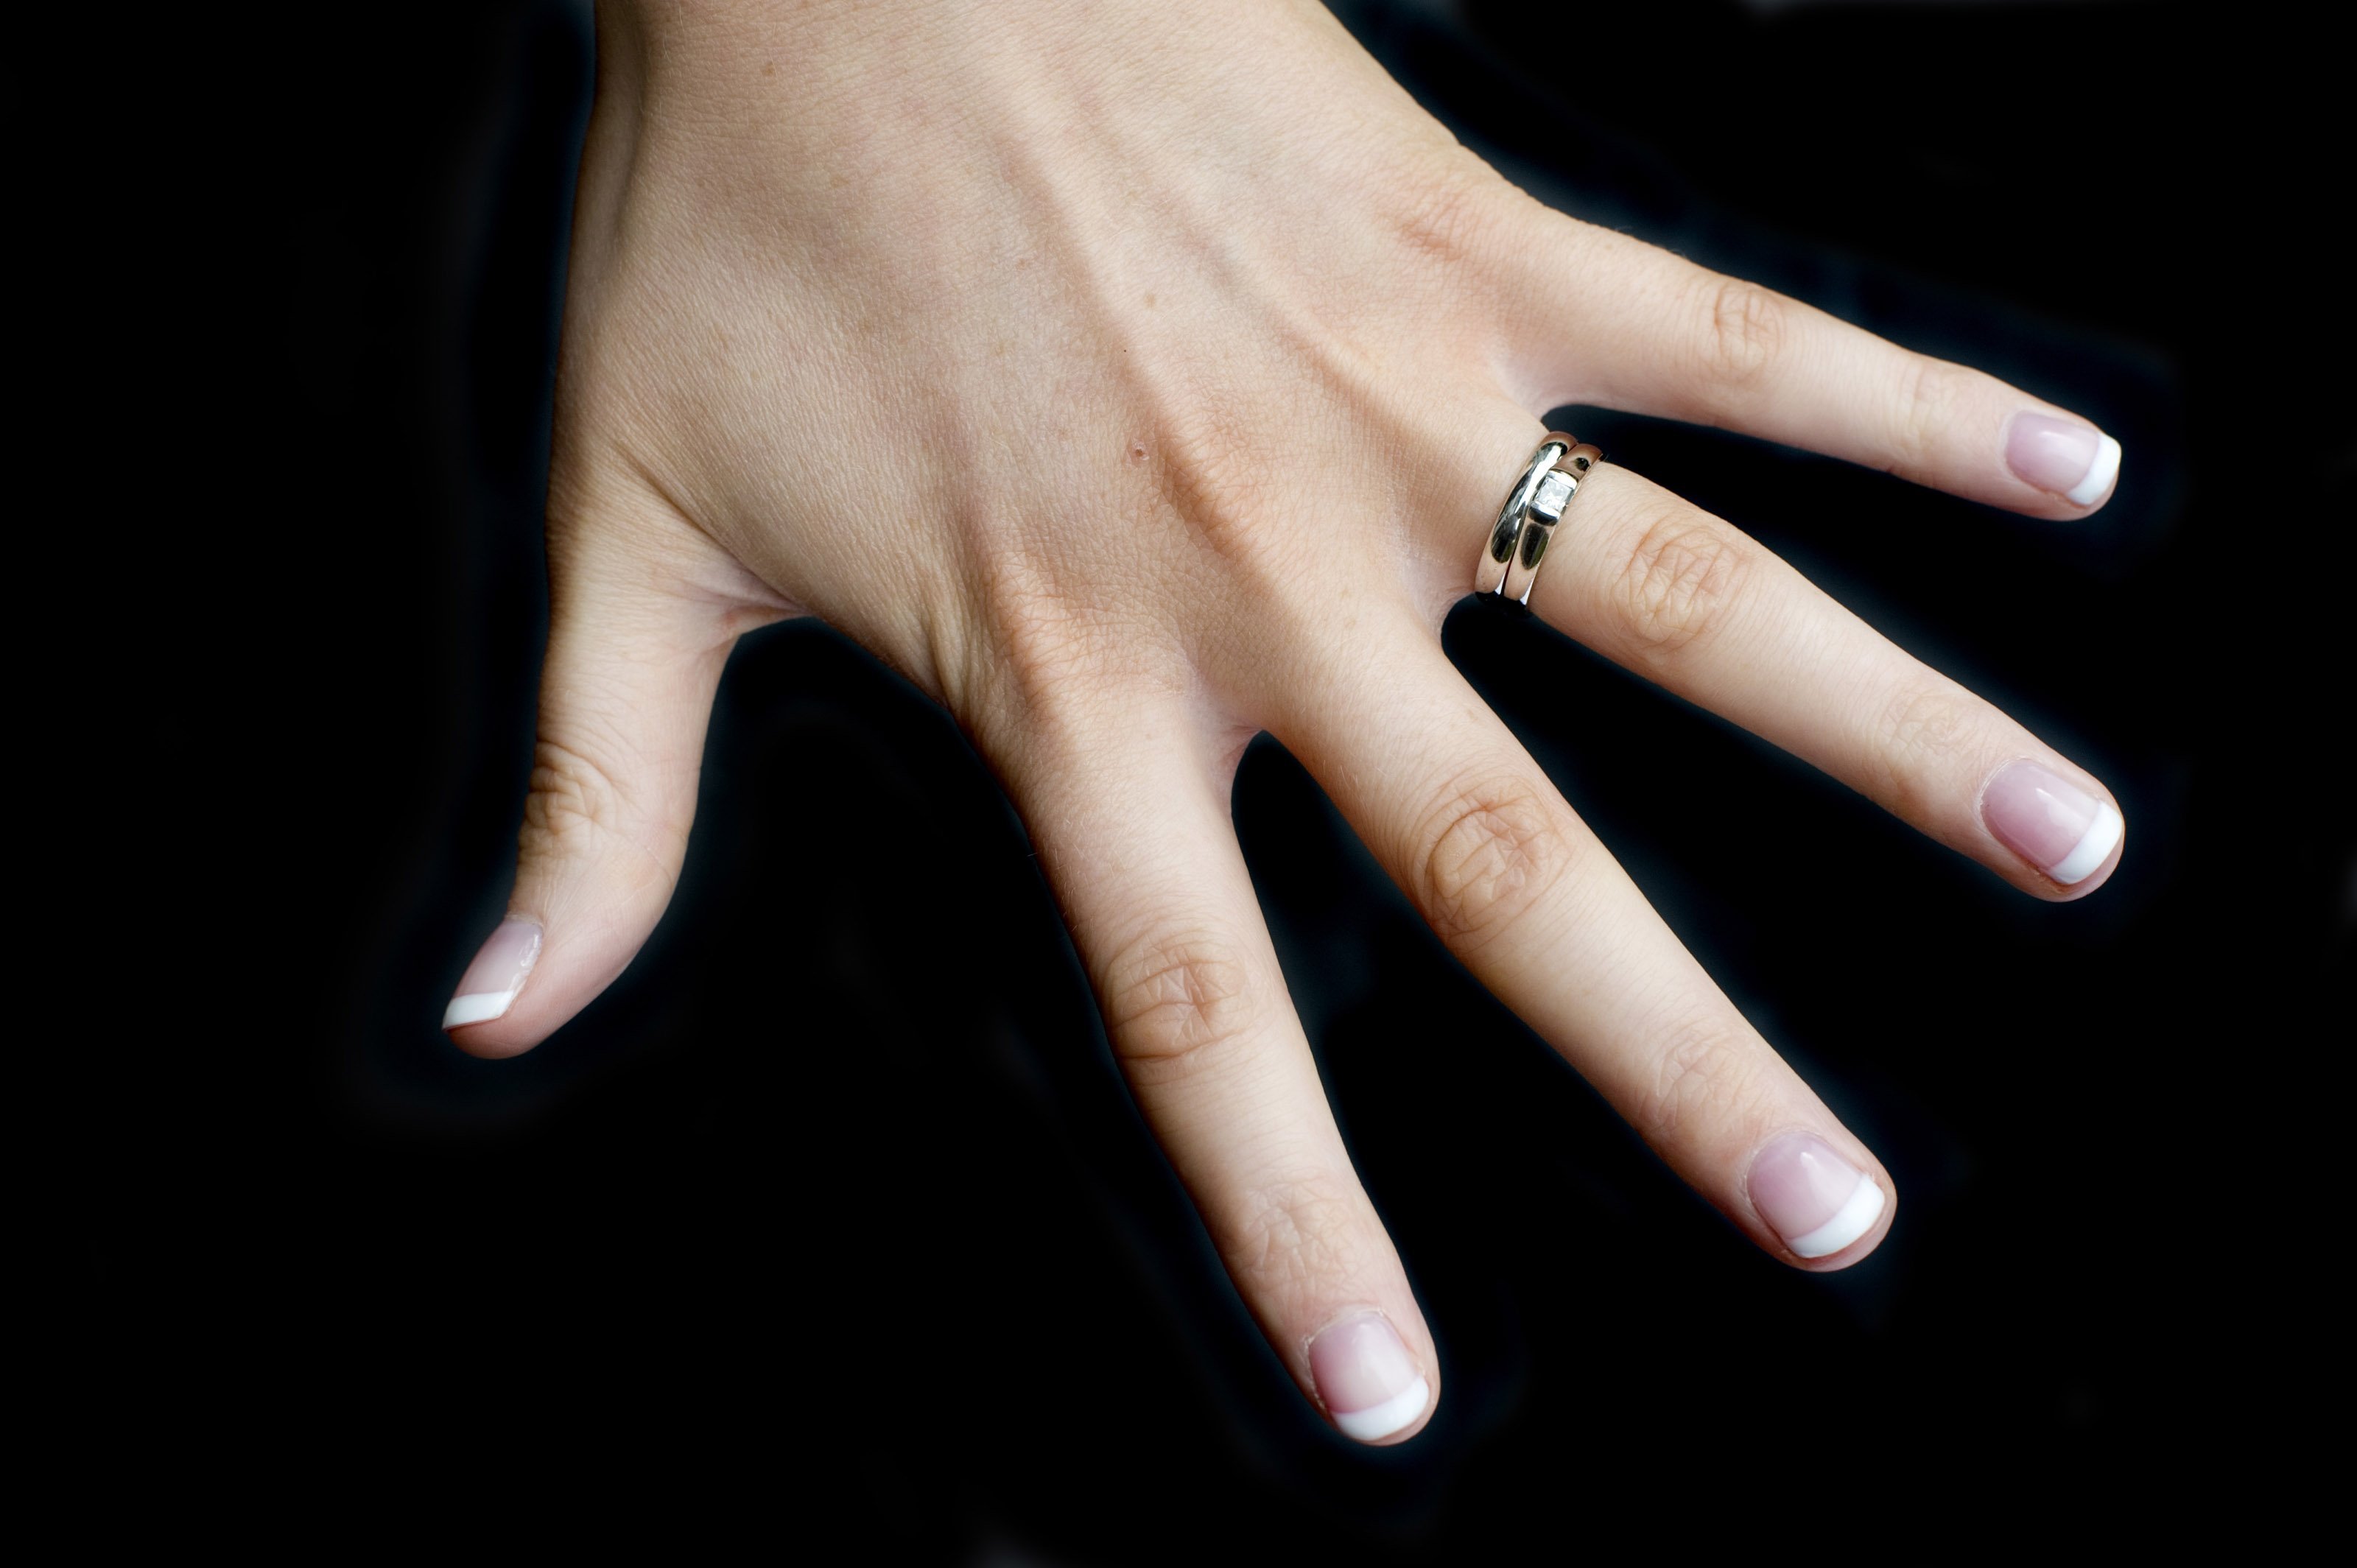 Разведенные на какой руке кольцо. Обручальное кольцо на пальце. Кольцо на руке. Кольцо на безымянном пальце. Женская рука с кольцом.